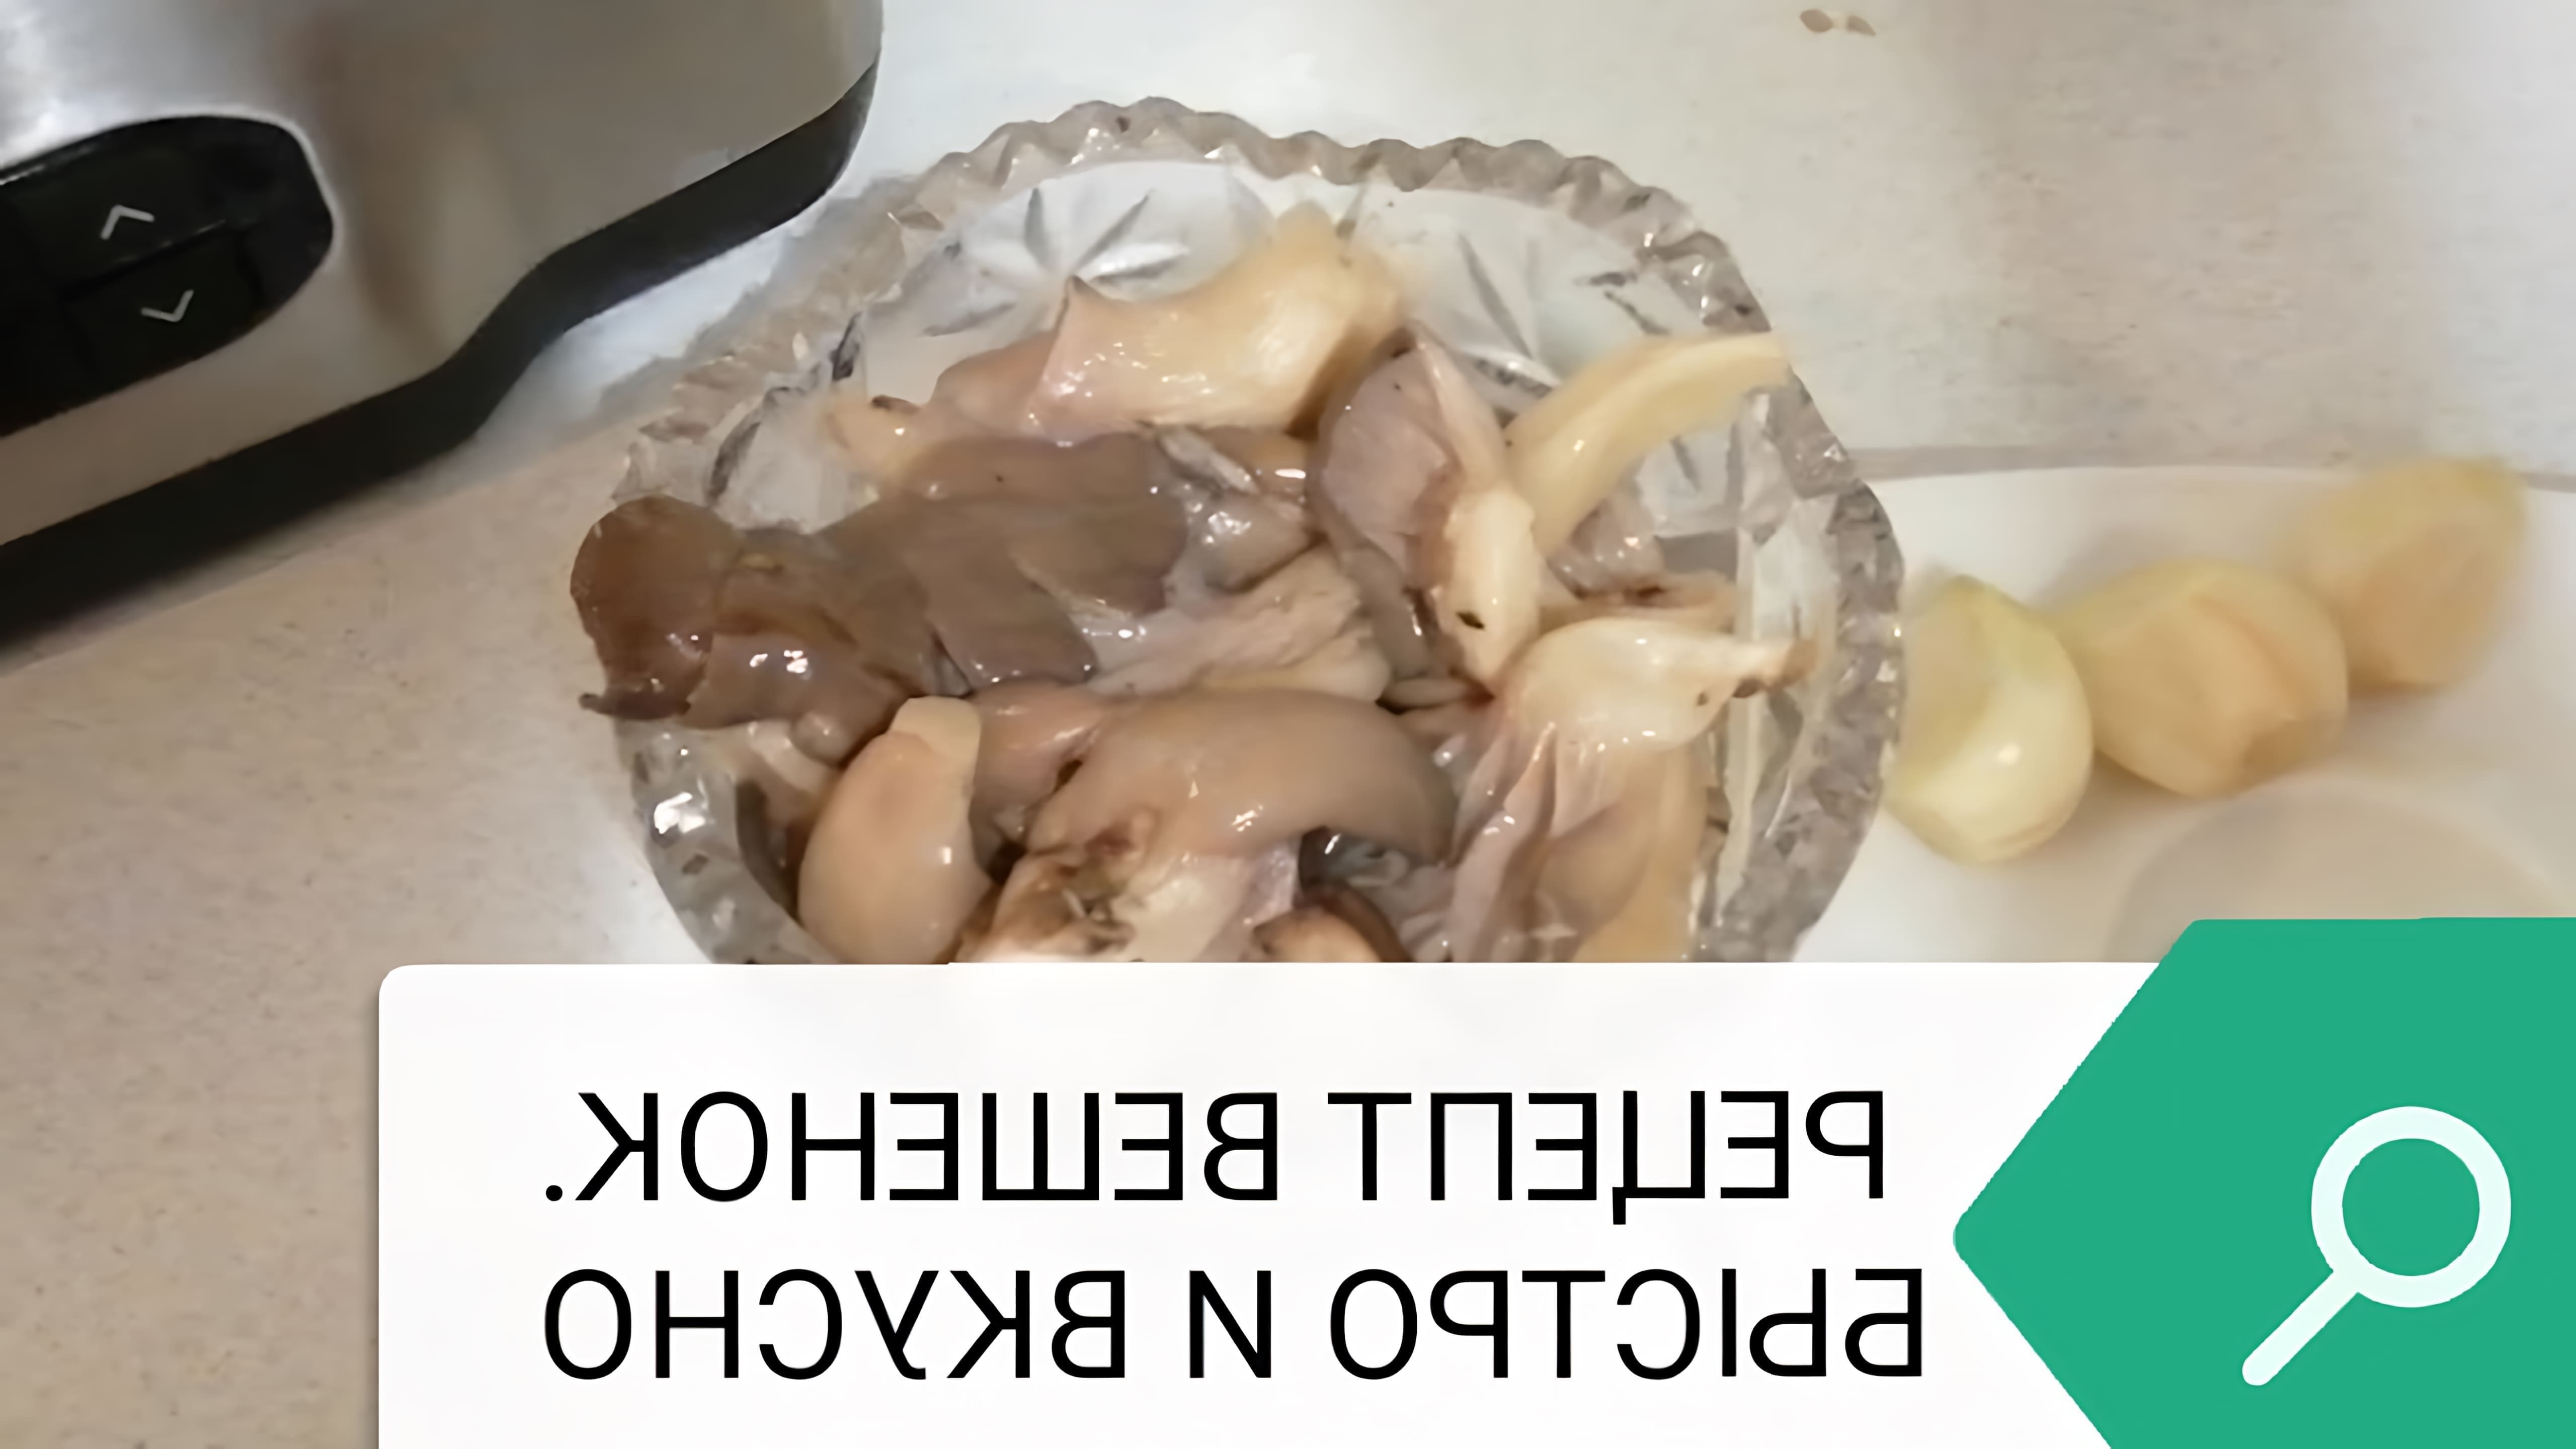 В данном видео демонстрируется рецепт приготовления соленых грибов вешенок